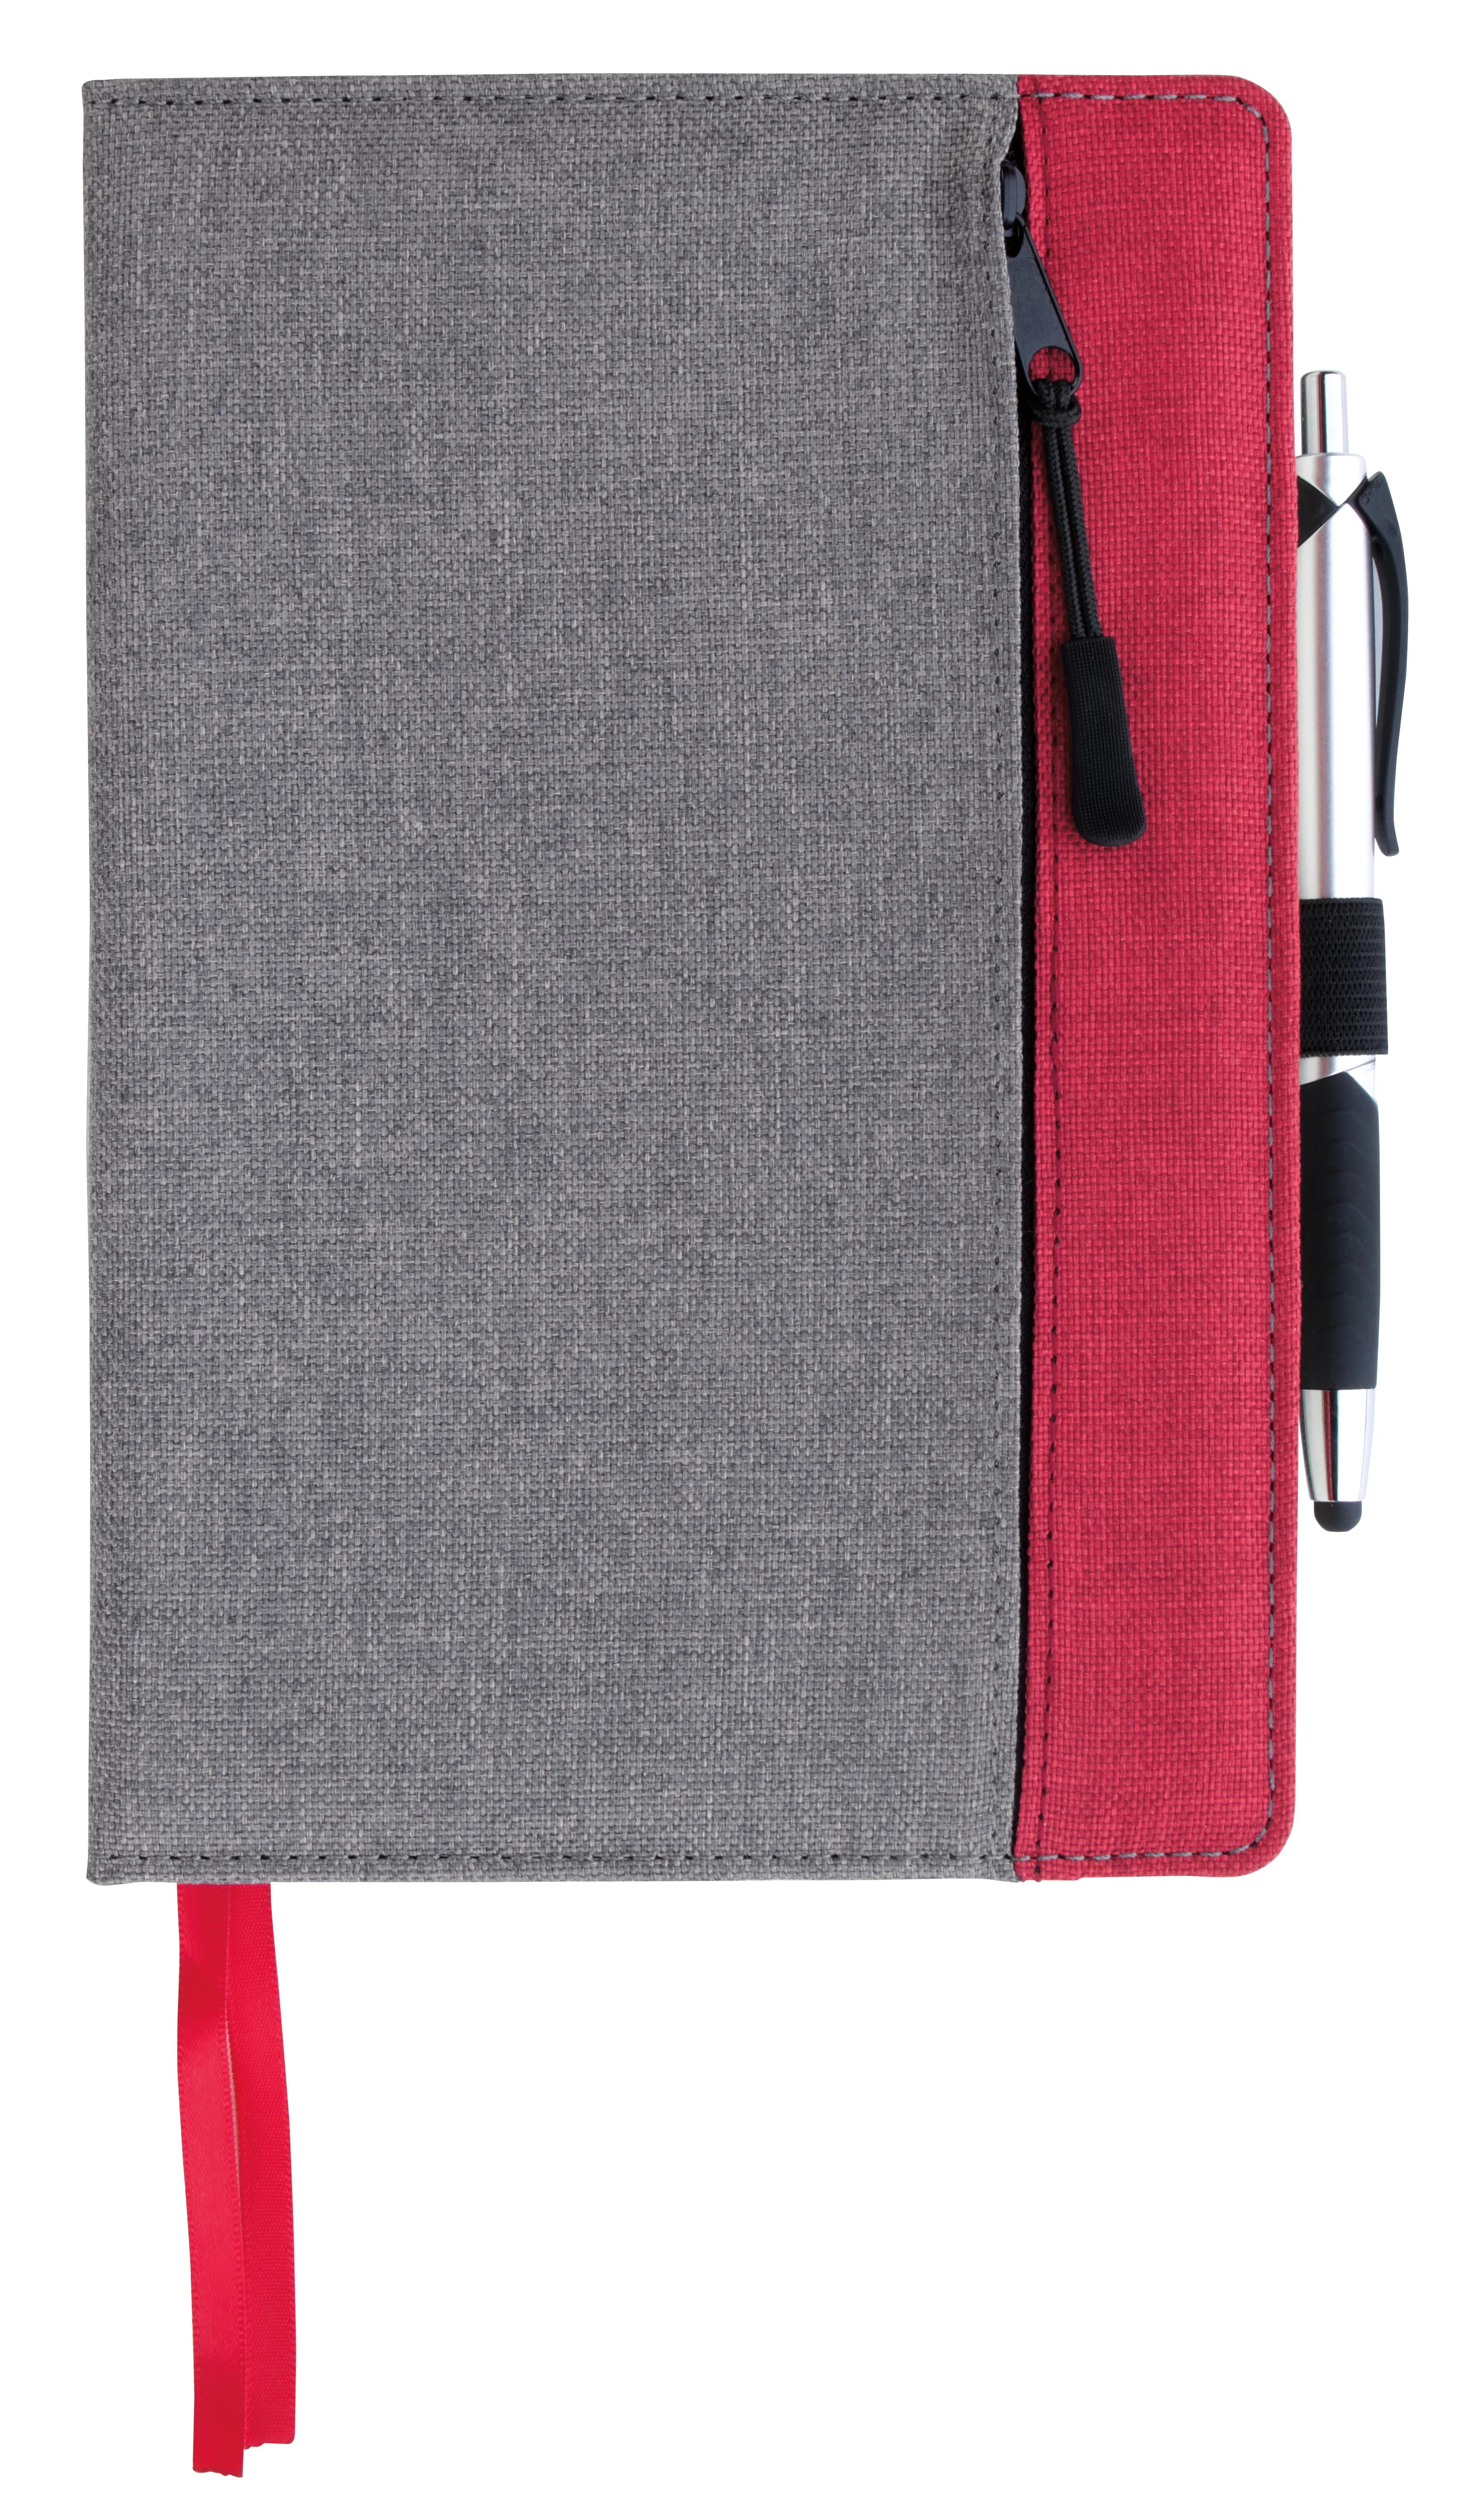 Front Zip Pocket Journal 2 of 11